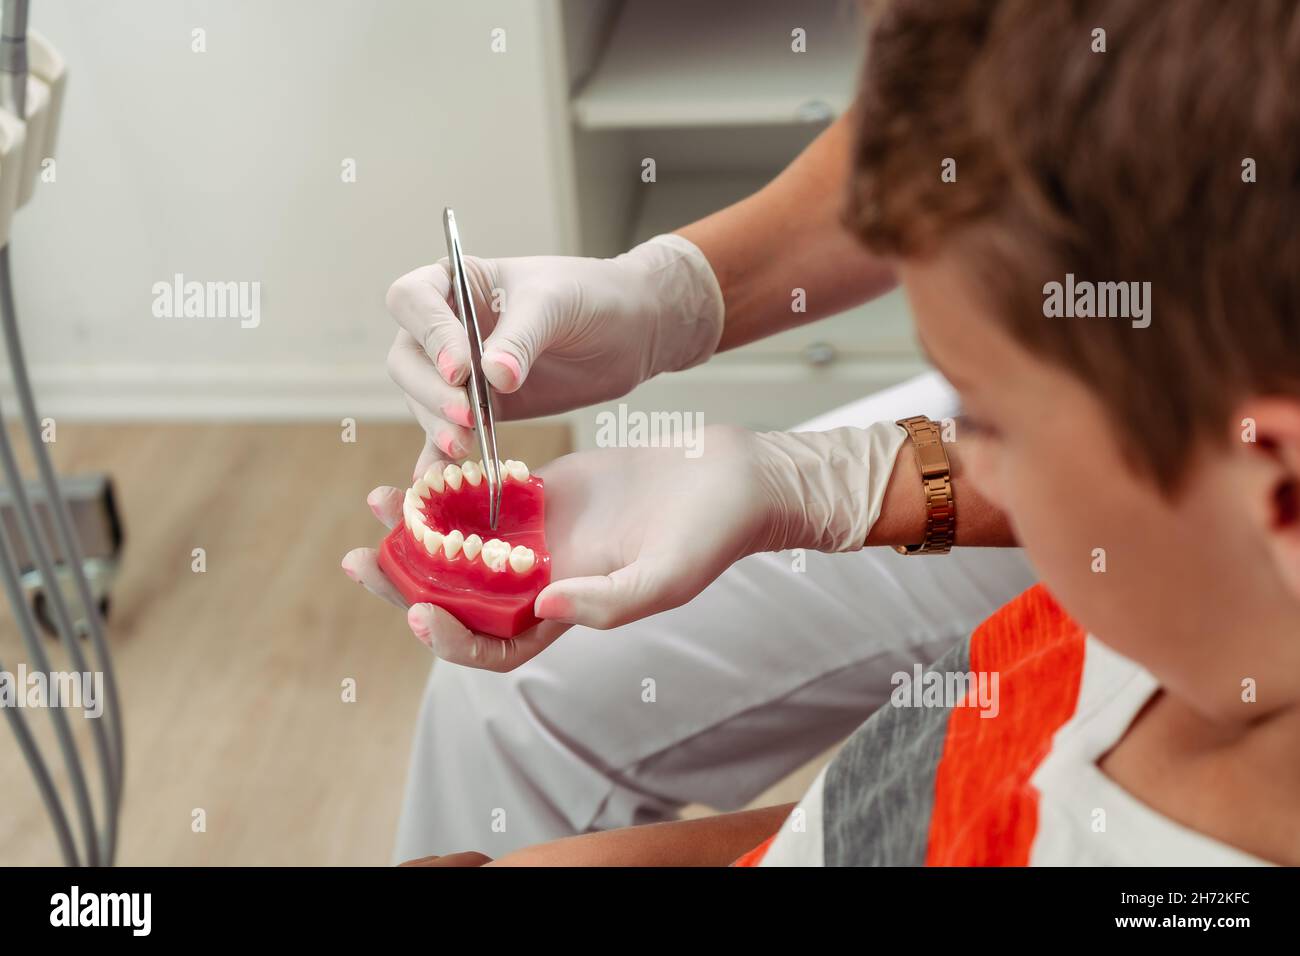 À l'aide d'un modèle dentaire, le dentiste féminin montre à l'enfant quel traitement il doit traiter.Concept soins dentaires, soins de santé. Banque D'Images